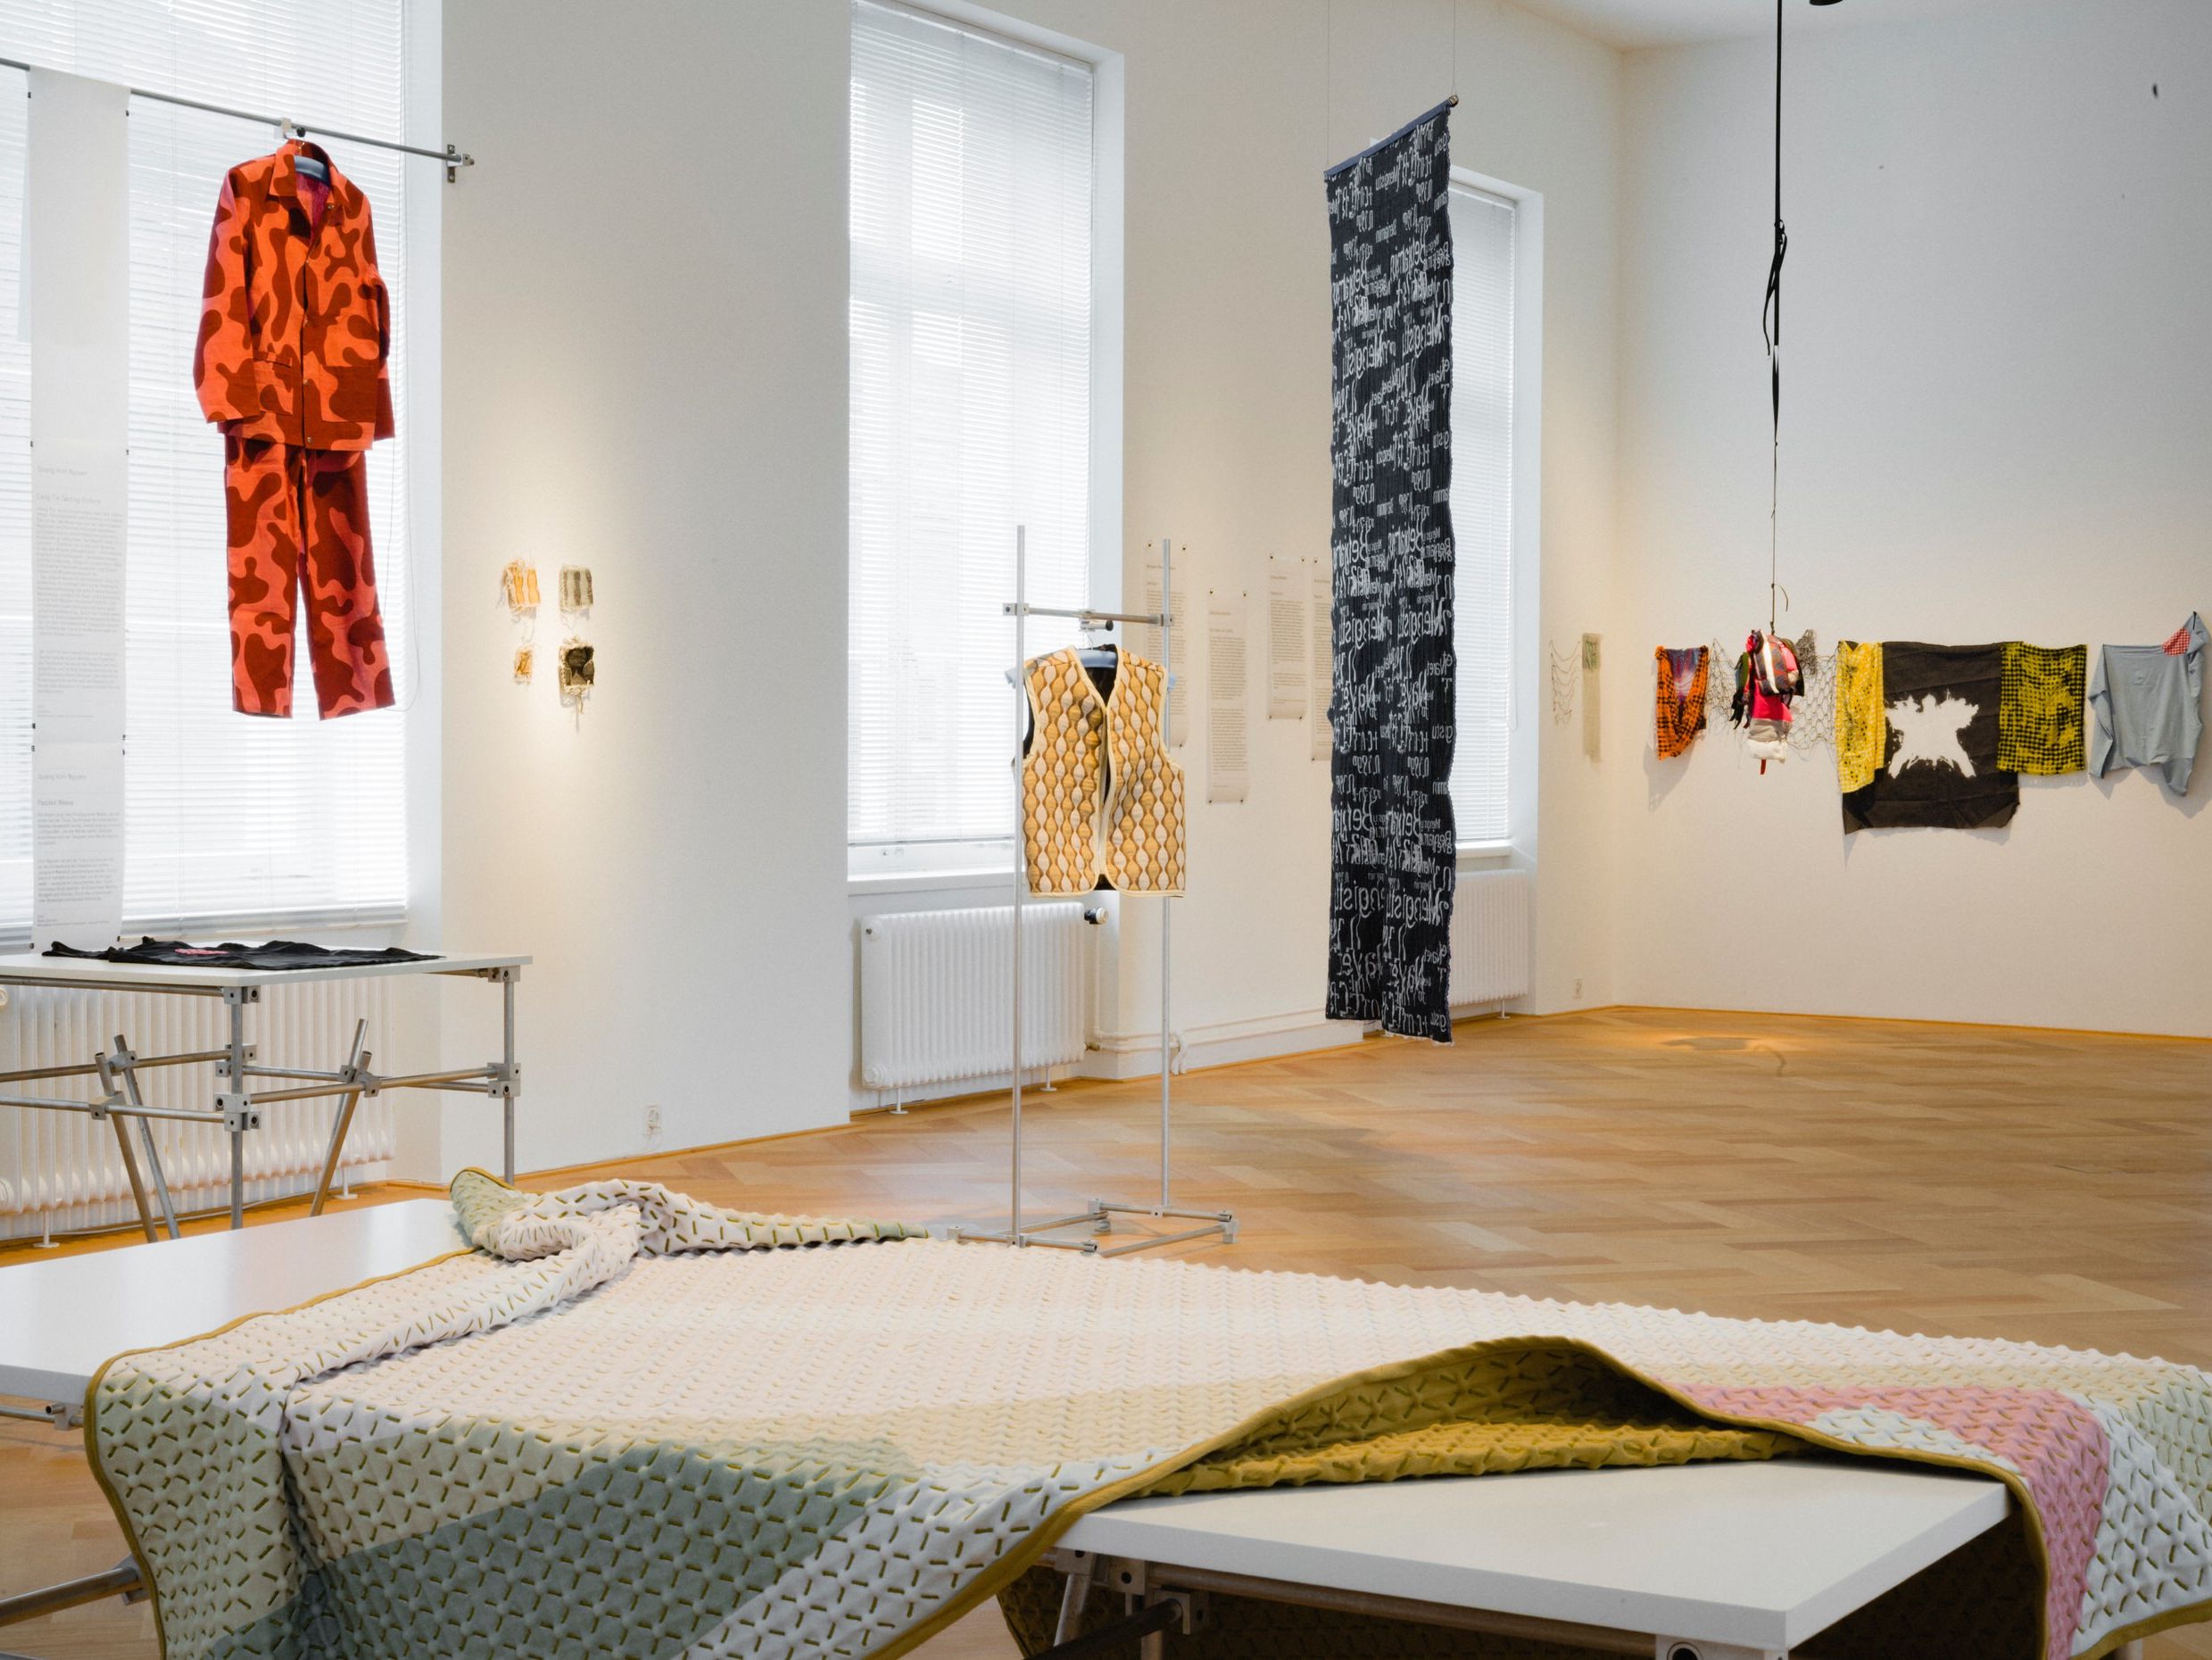 Dialogische Führung: Kunst, Design & textile Produktion